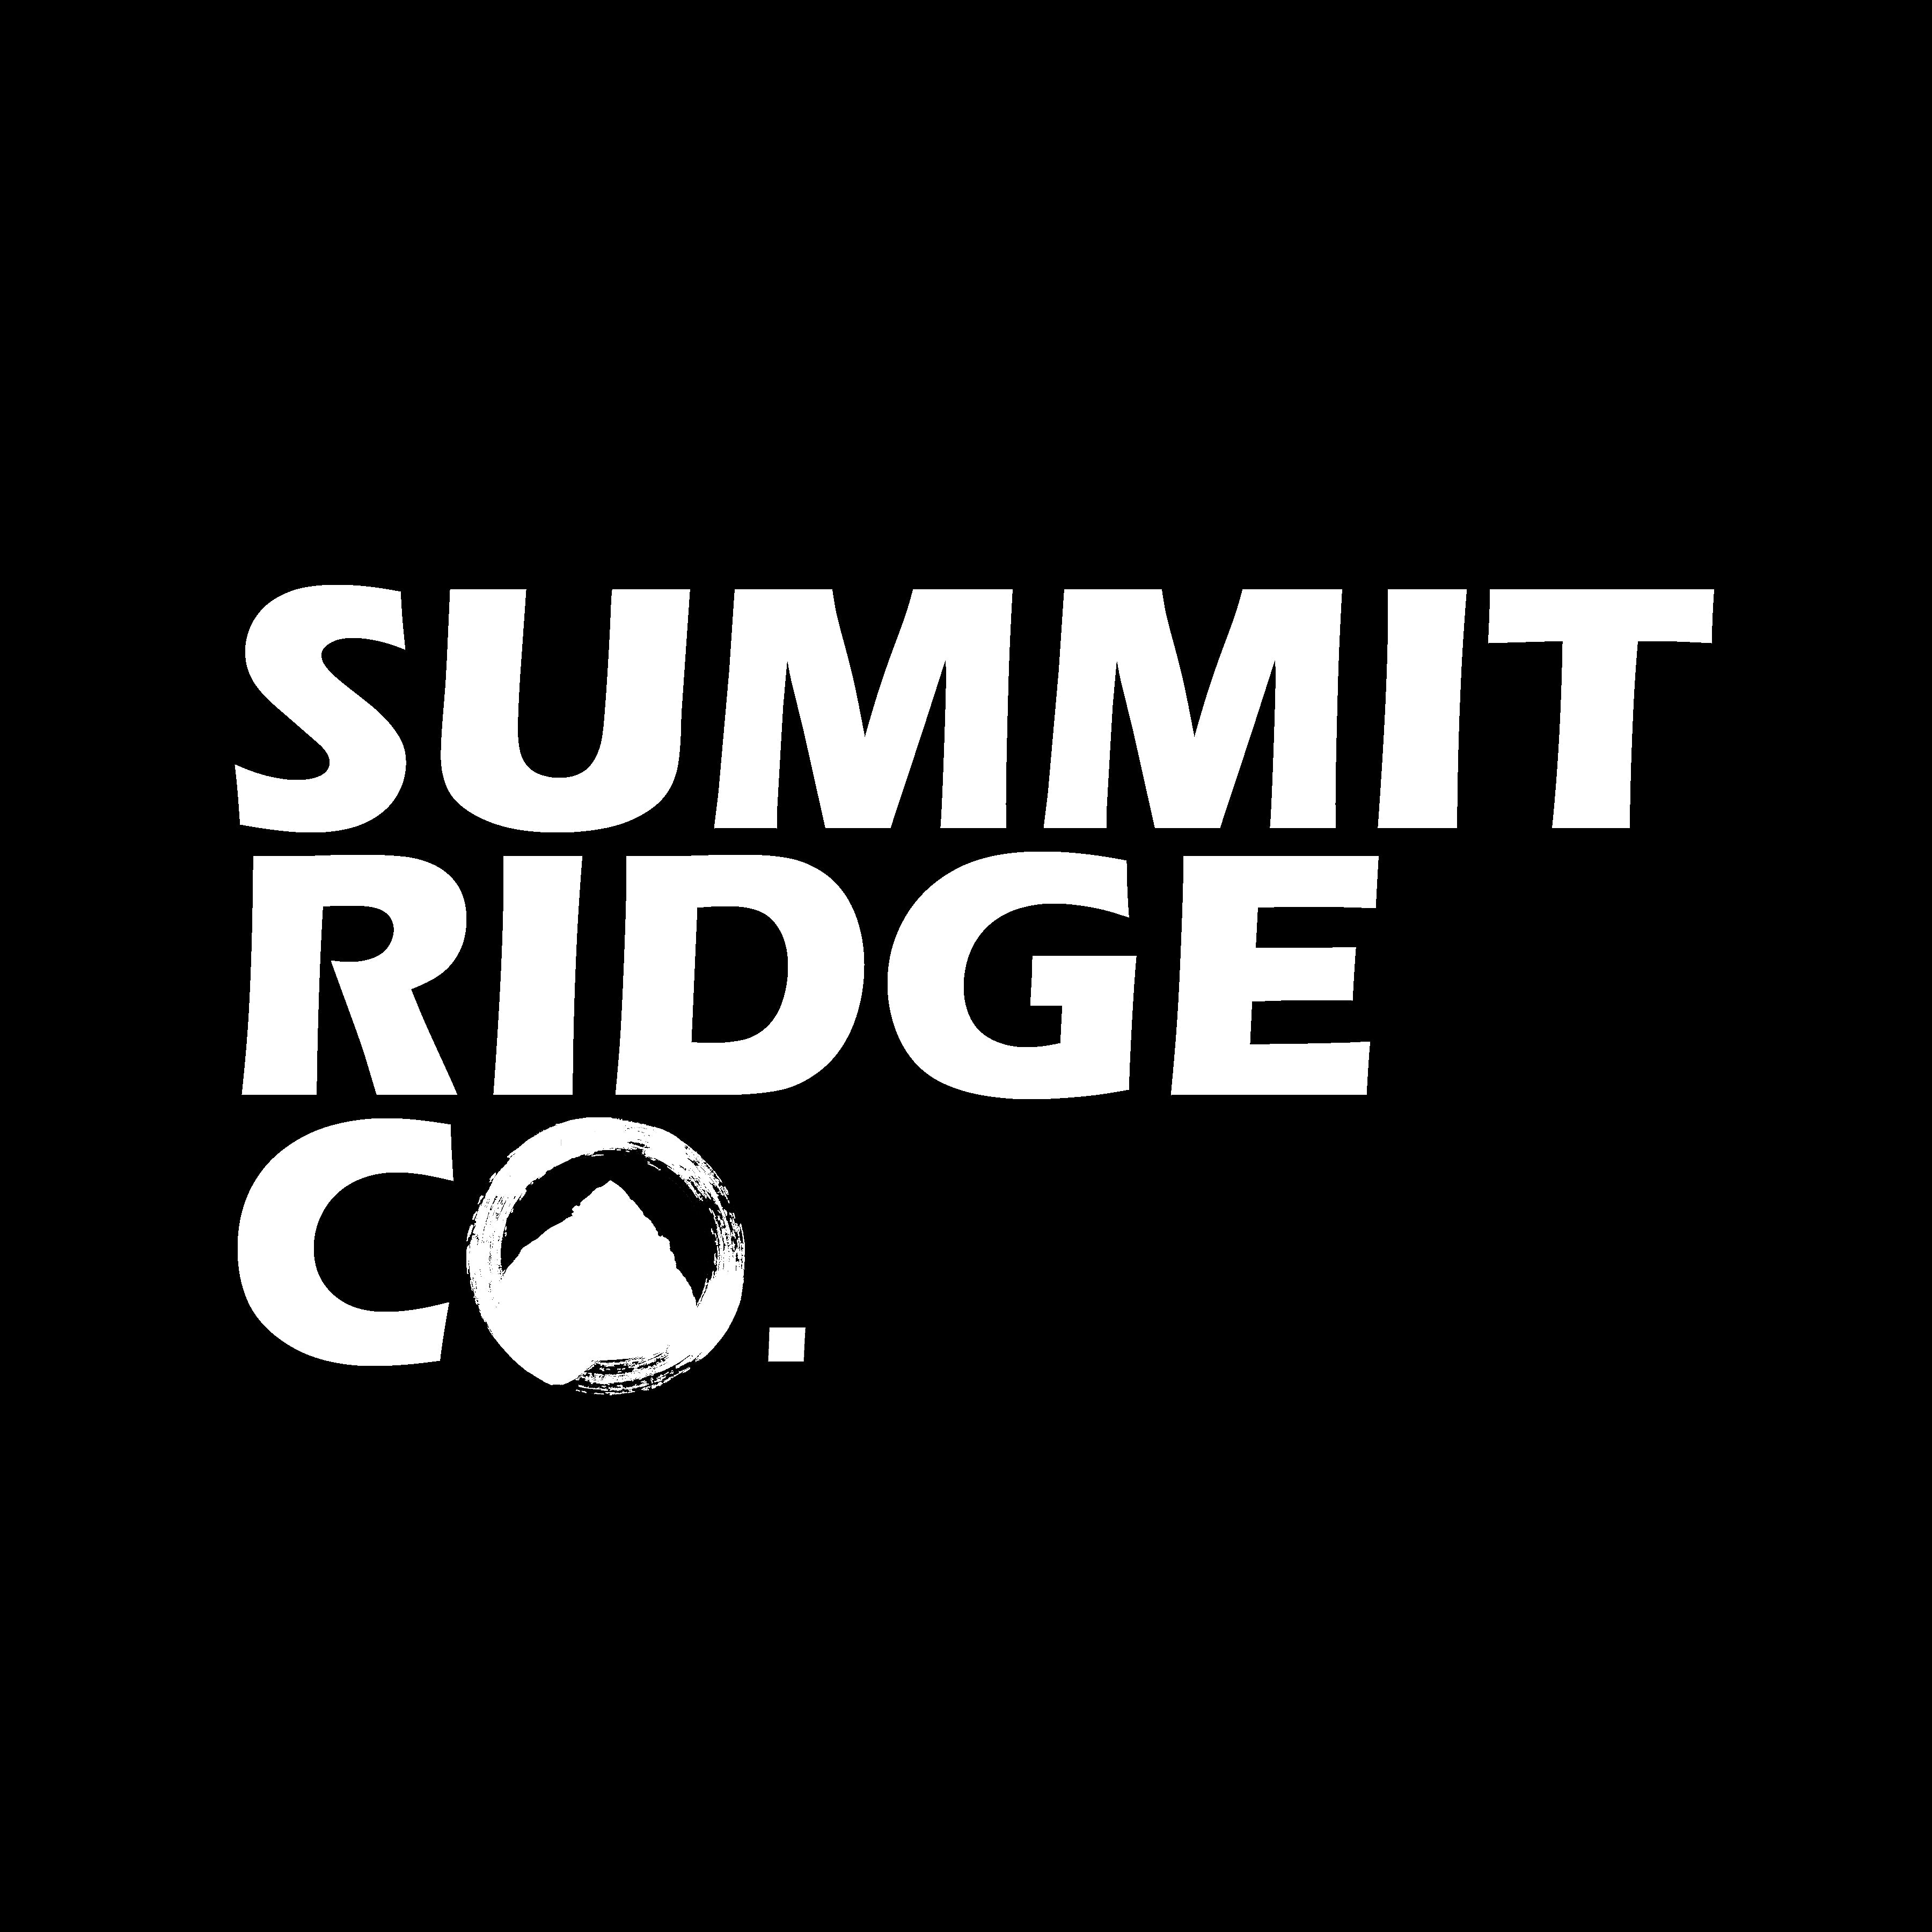 Summit Ridge Co.